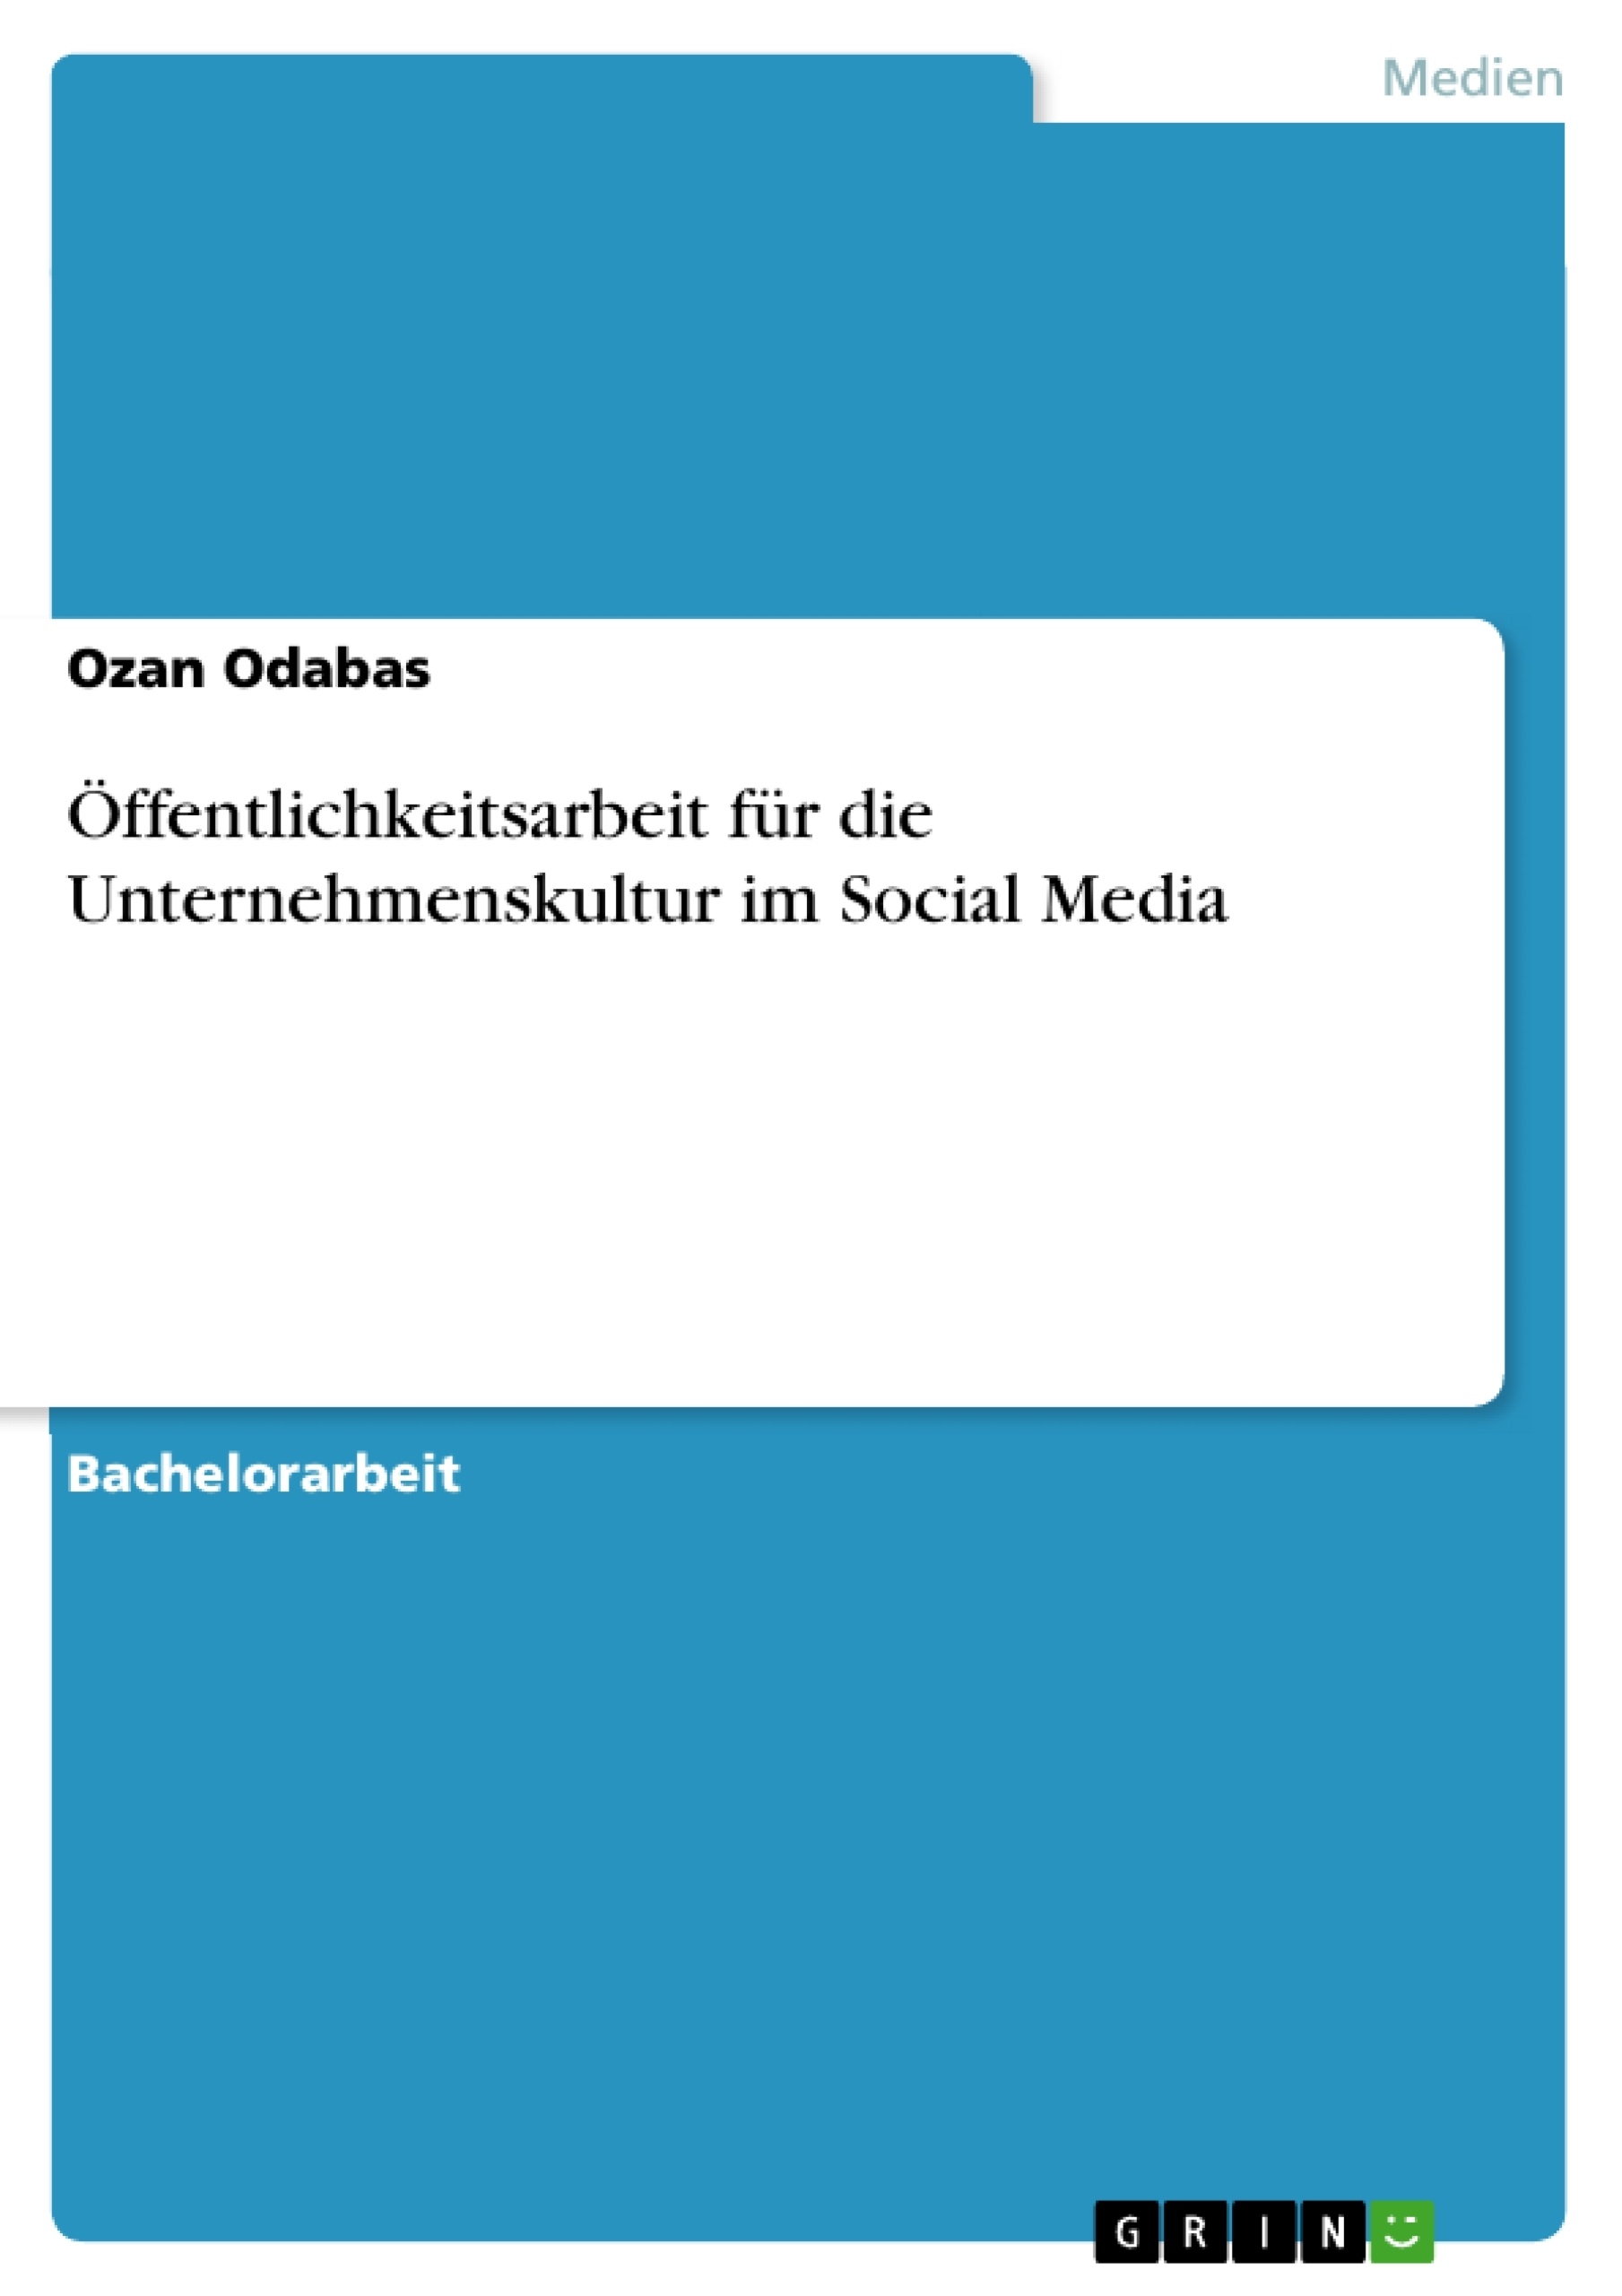 Title: Öffentlichkeitsarbeit für die Unternehmenskultur im Social Media